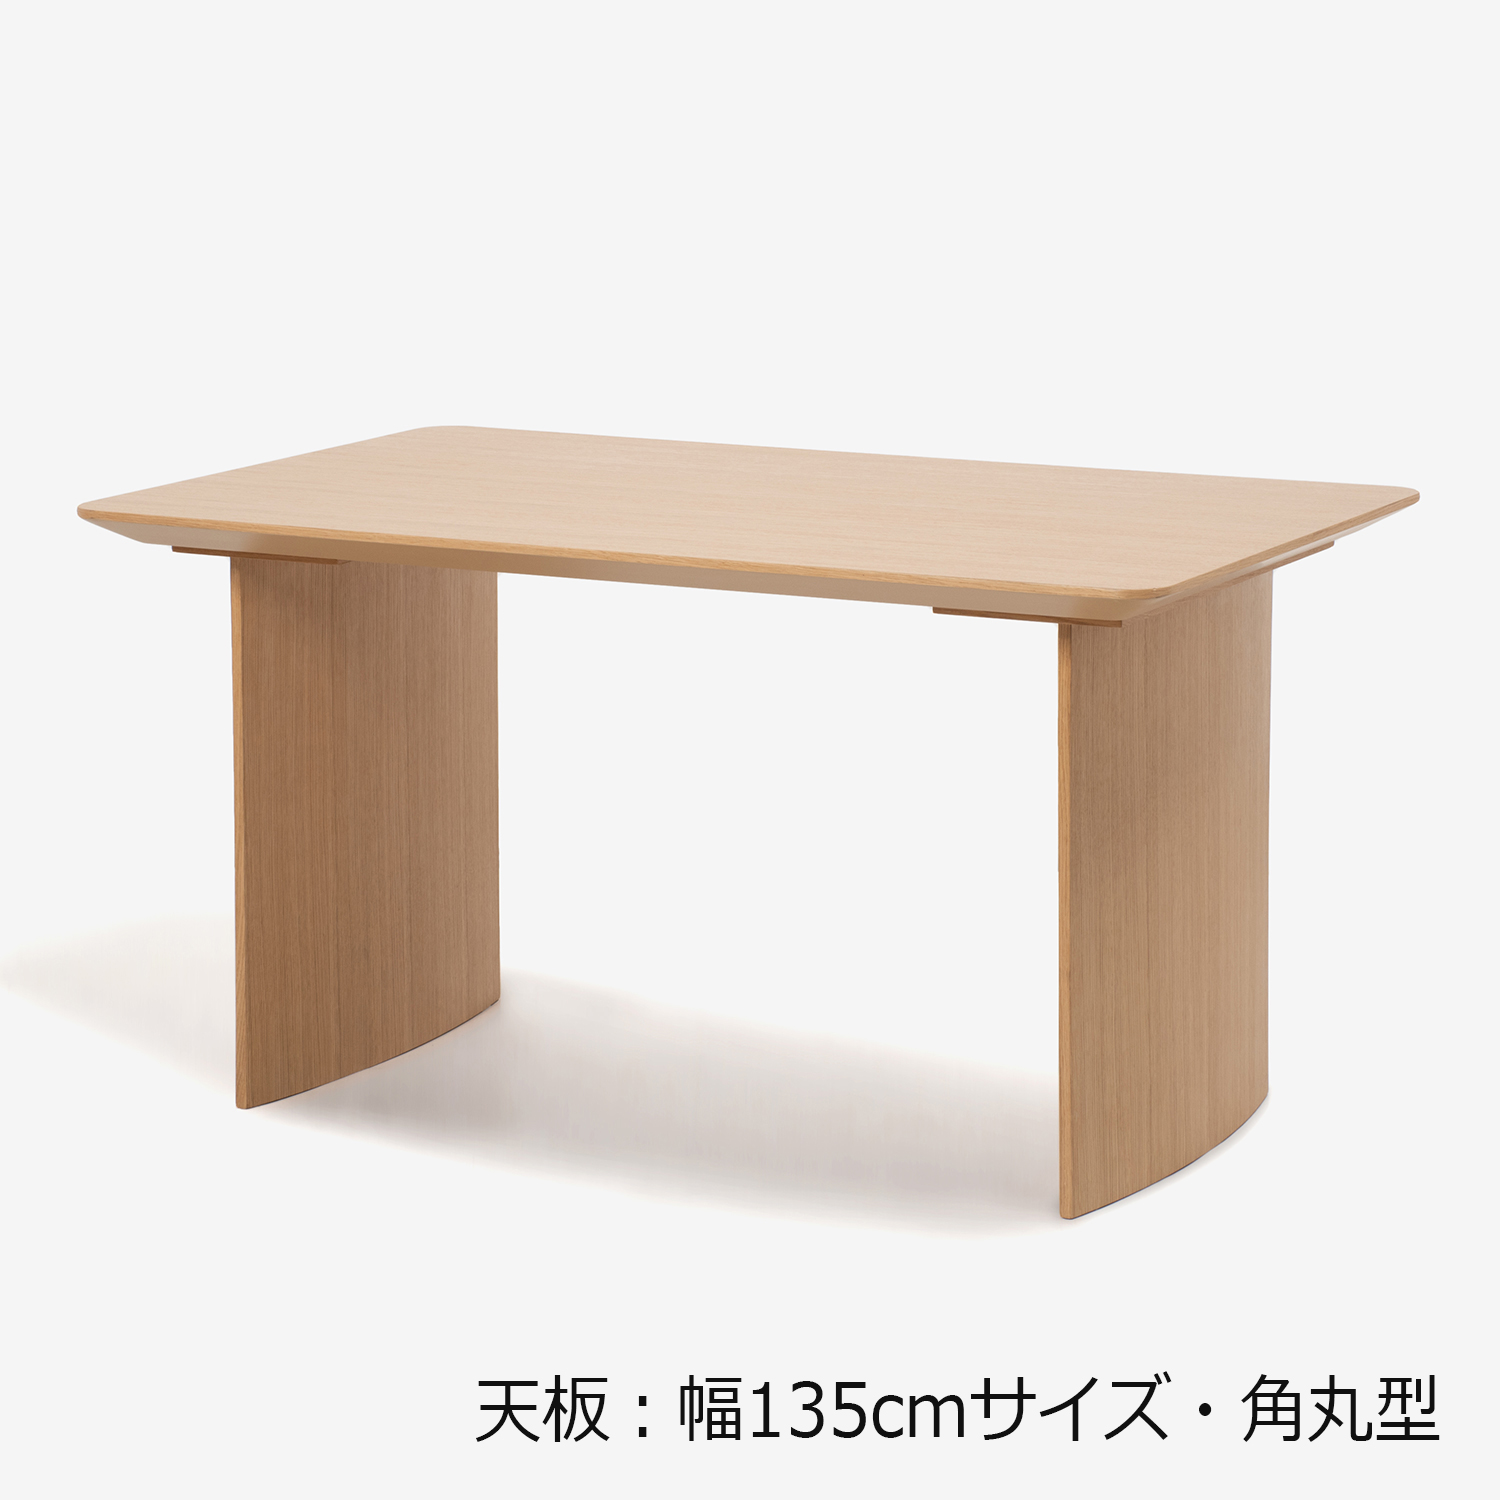 ダイニングテーブル「ジャスト」オーク材 パネル脚 全6サイズ【決算 